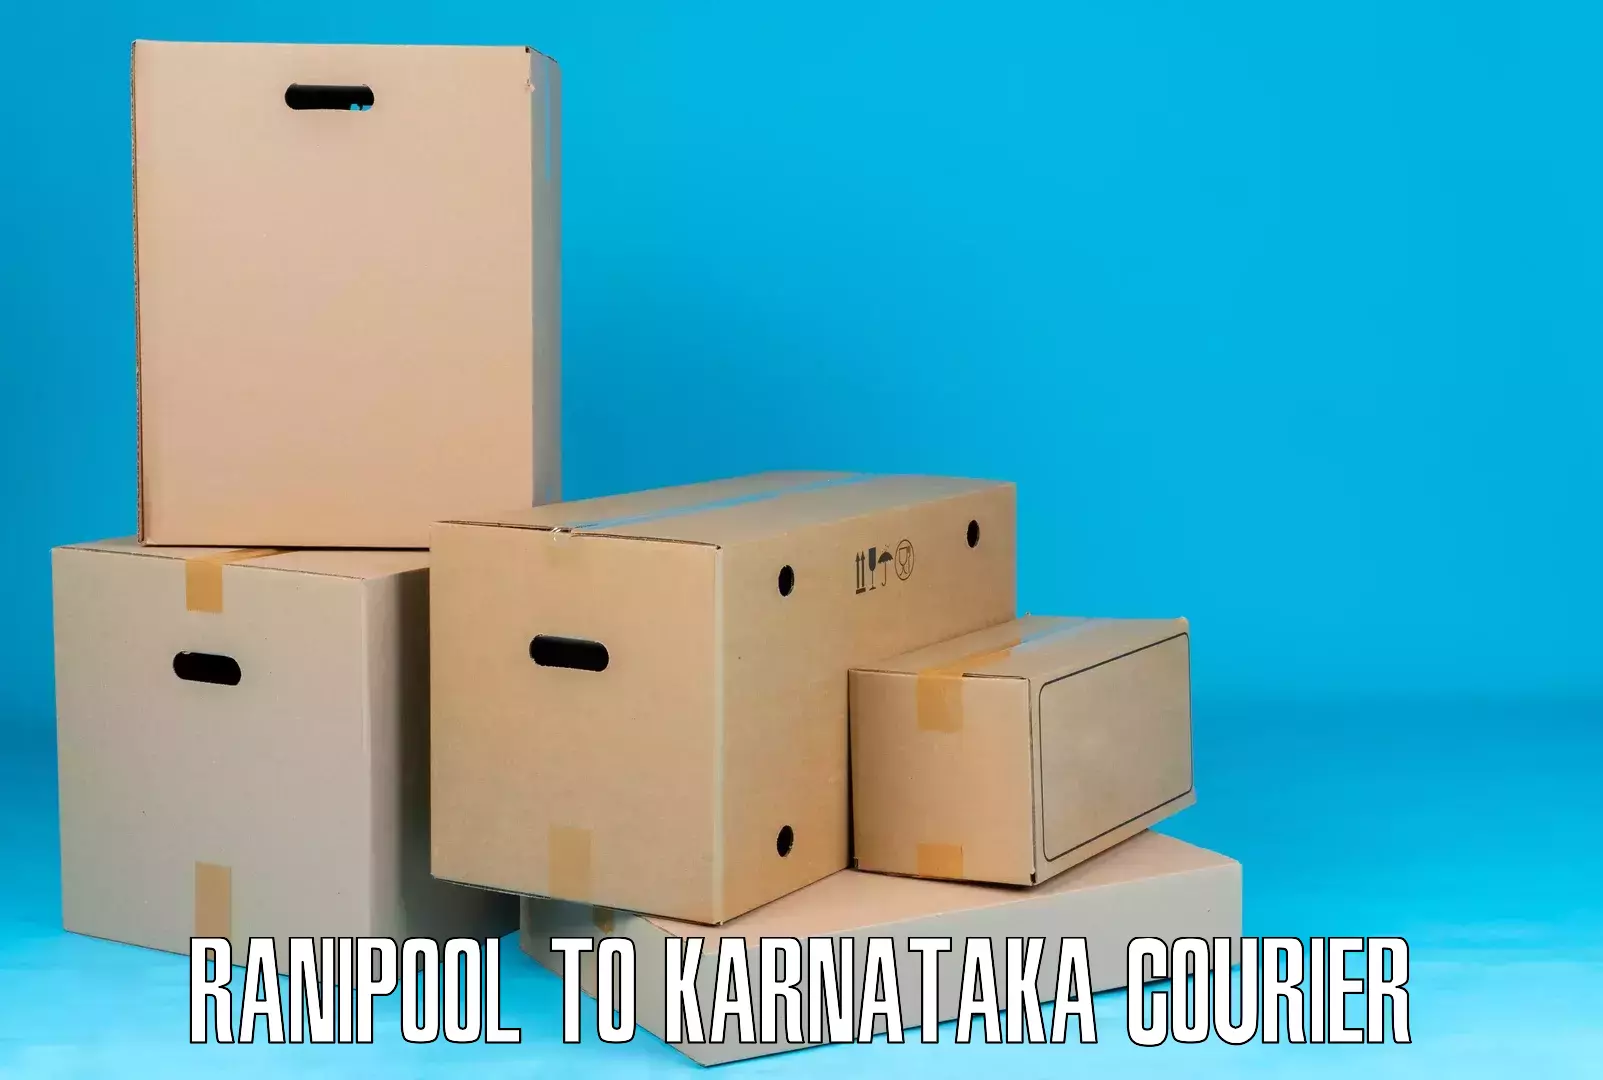 Smart logistics strategies Ranipool to Devadurga